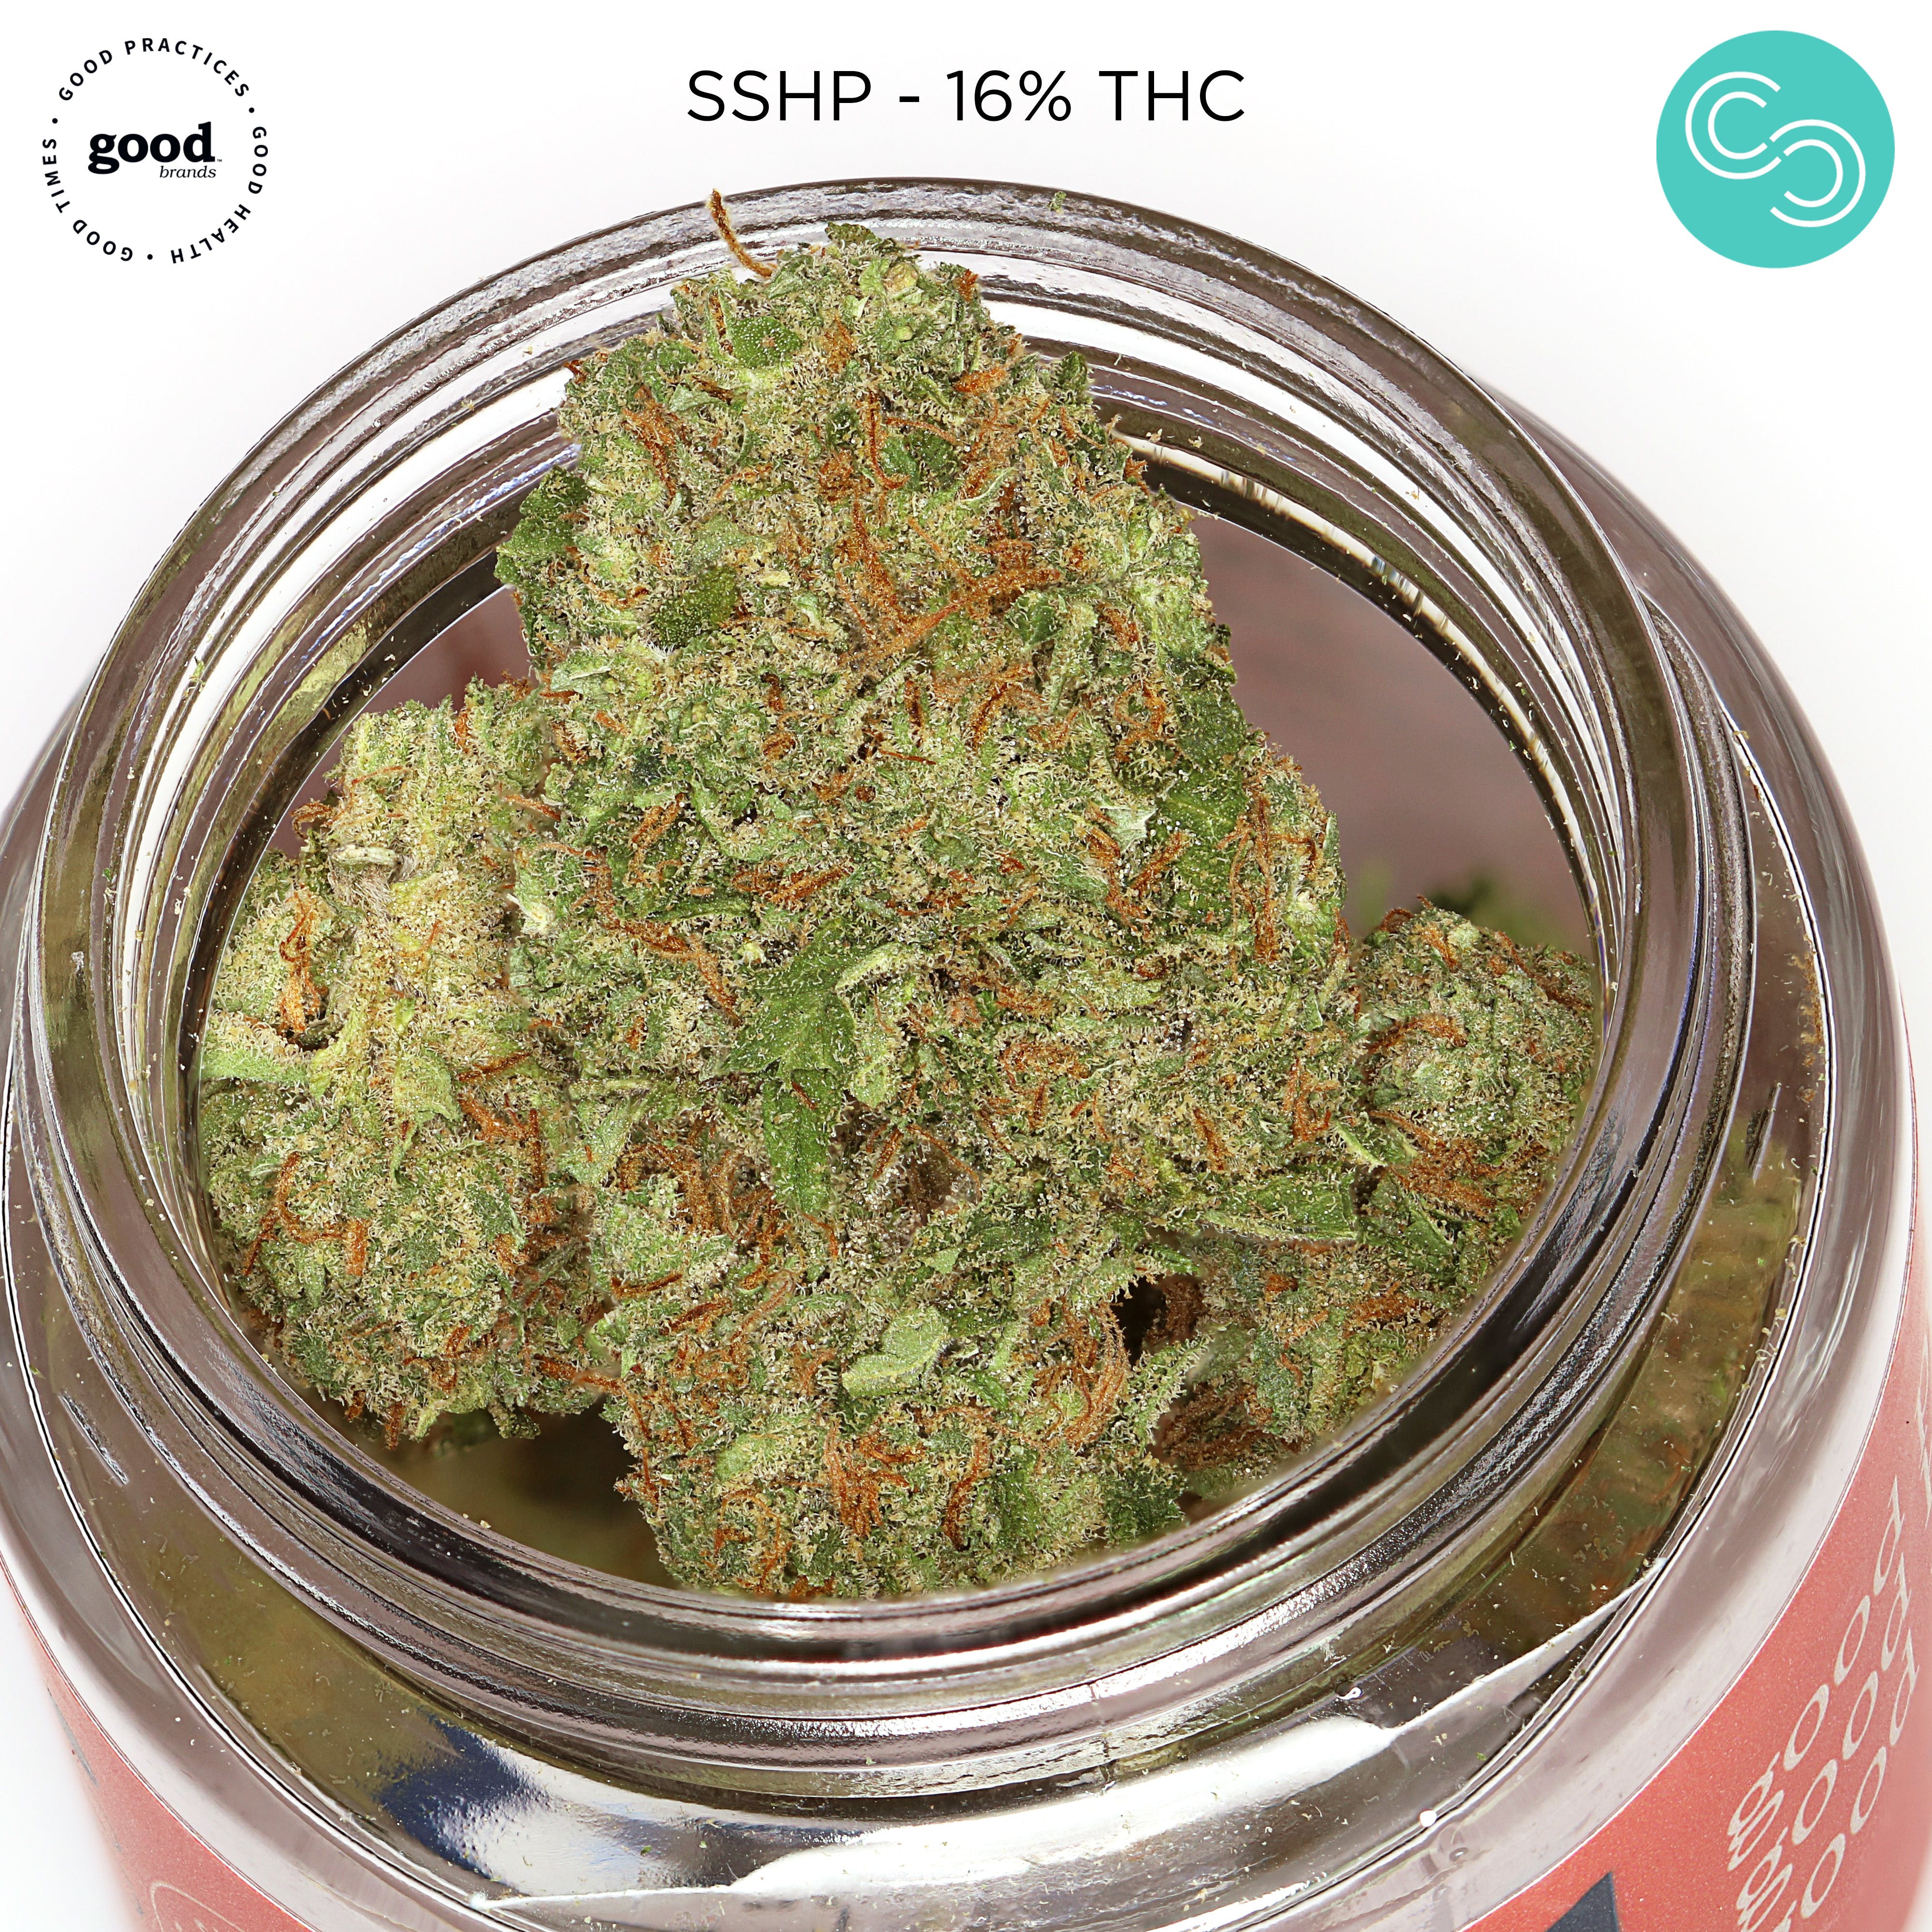 Good Flower - SSHP - 16% THC